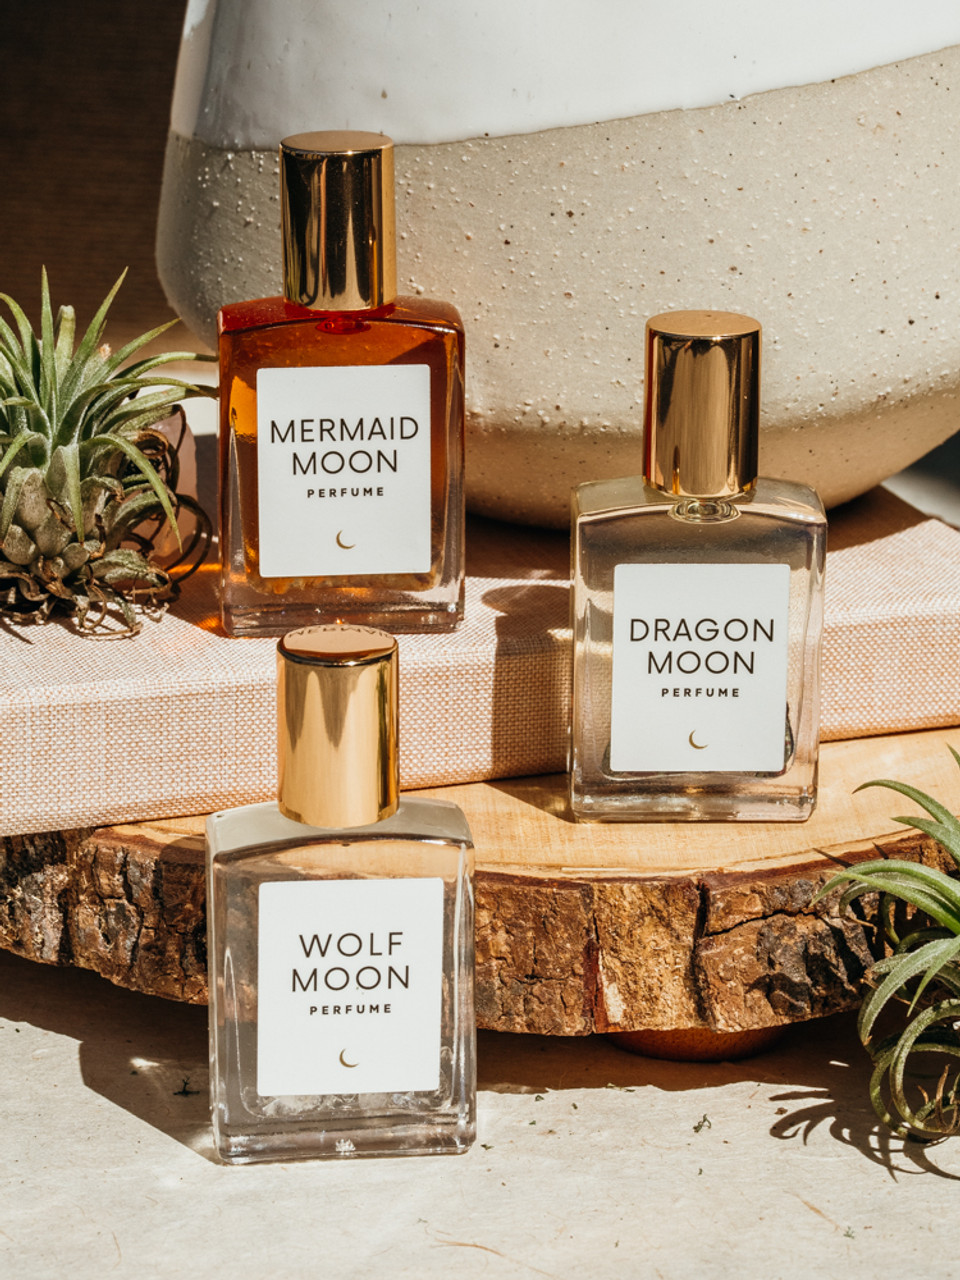 Cierra Perfumes – Home of Originals